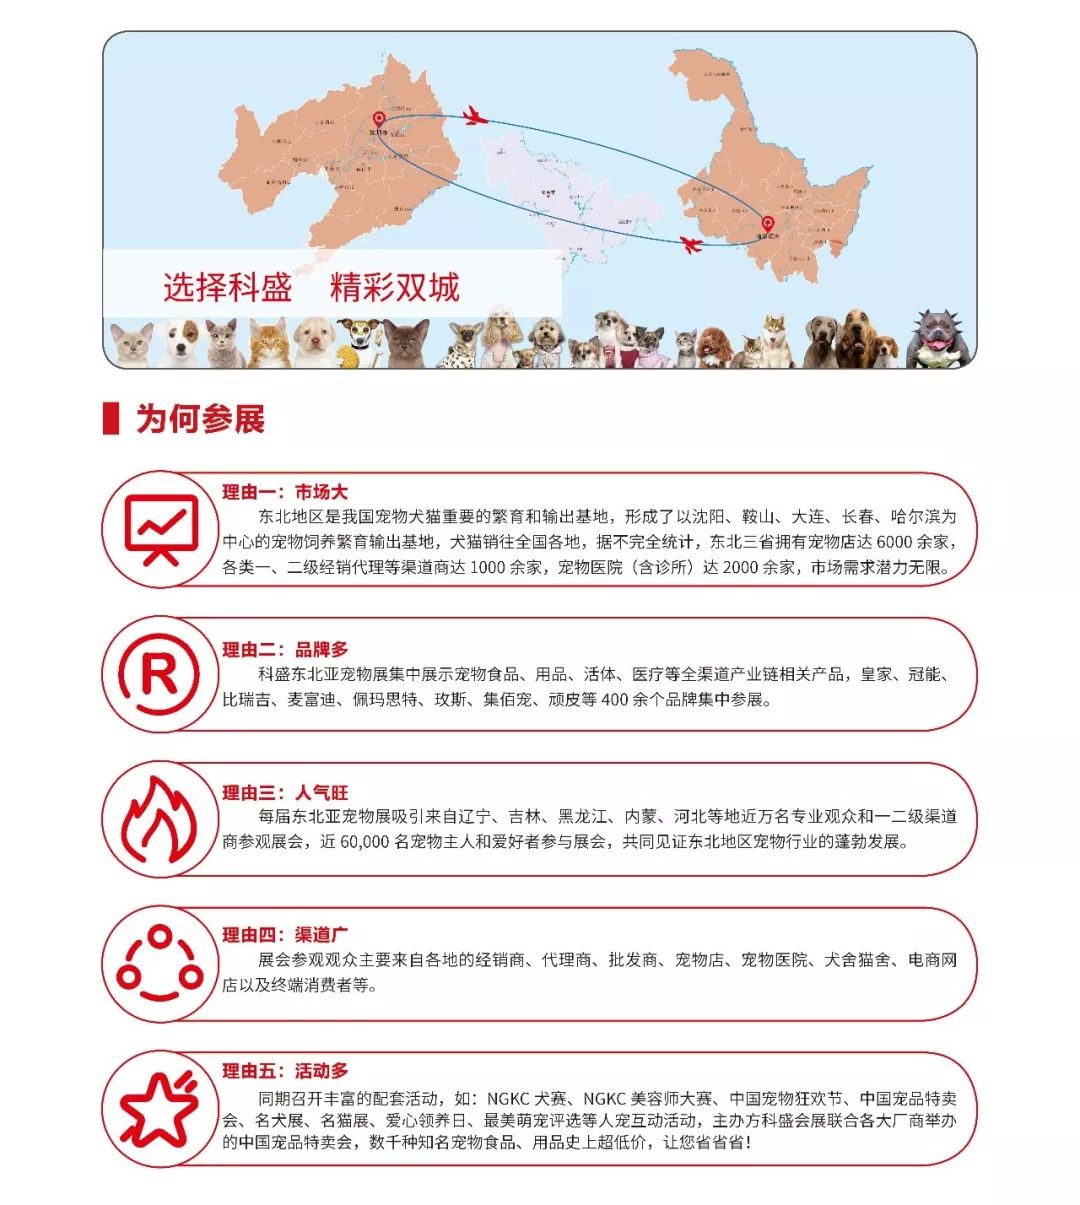 携手科盛 精彩双城|2020第五届科盛东北亚宠物用品展盛世起航